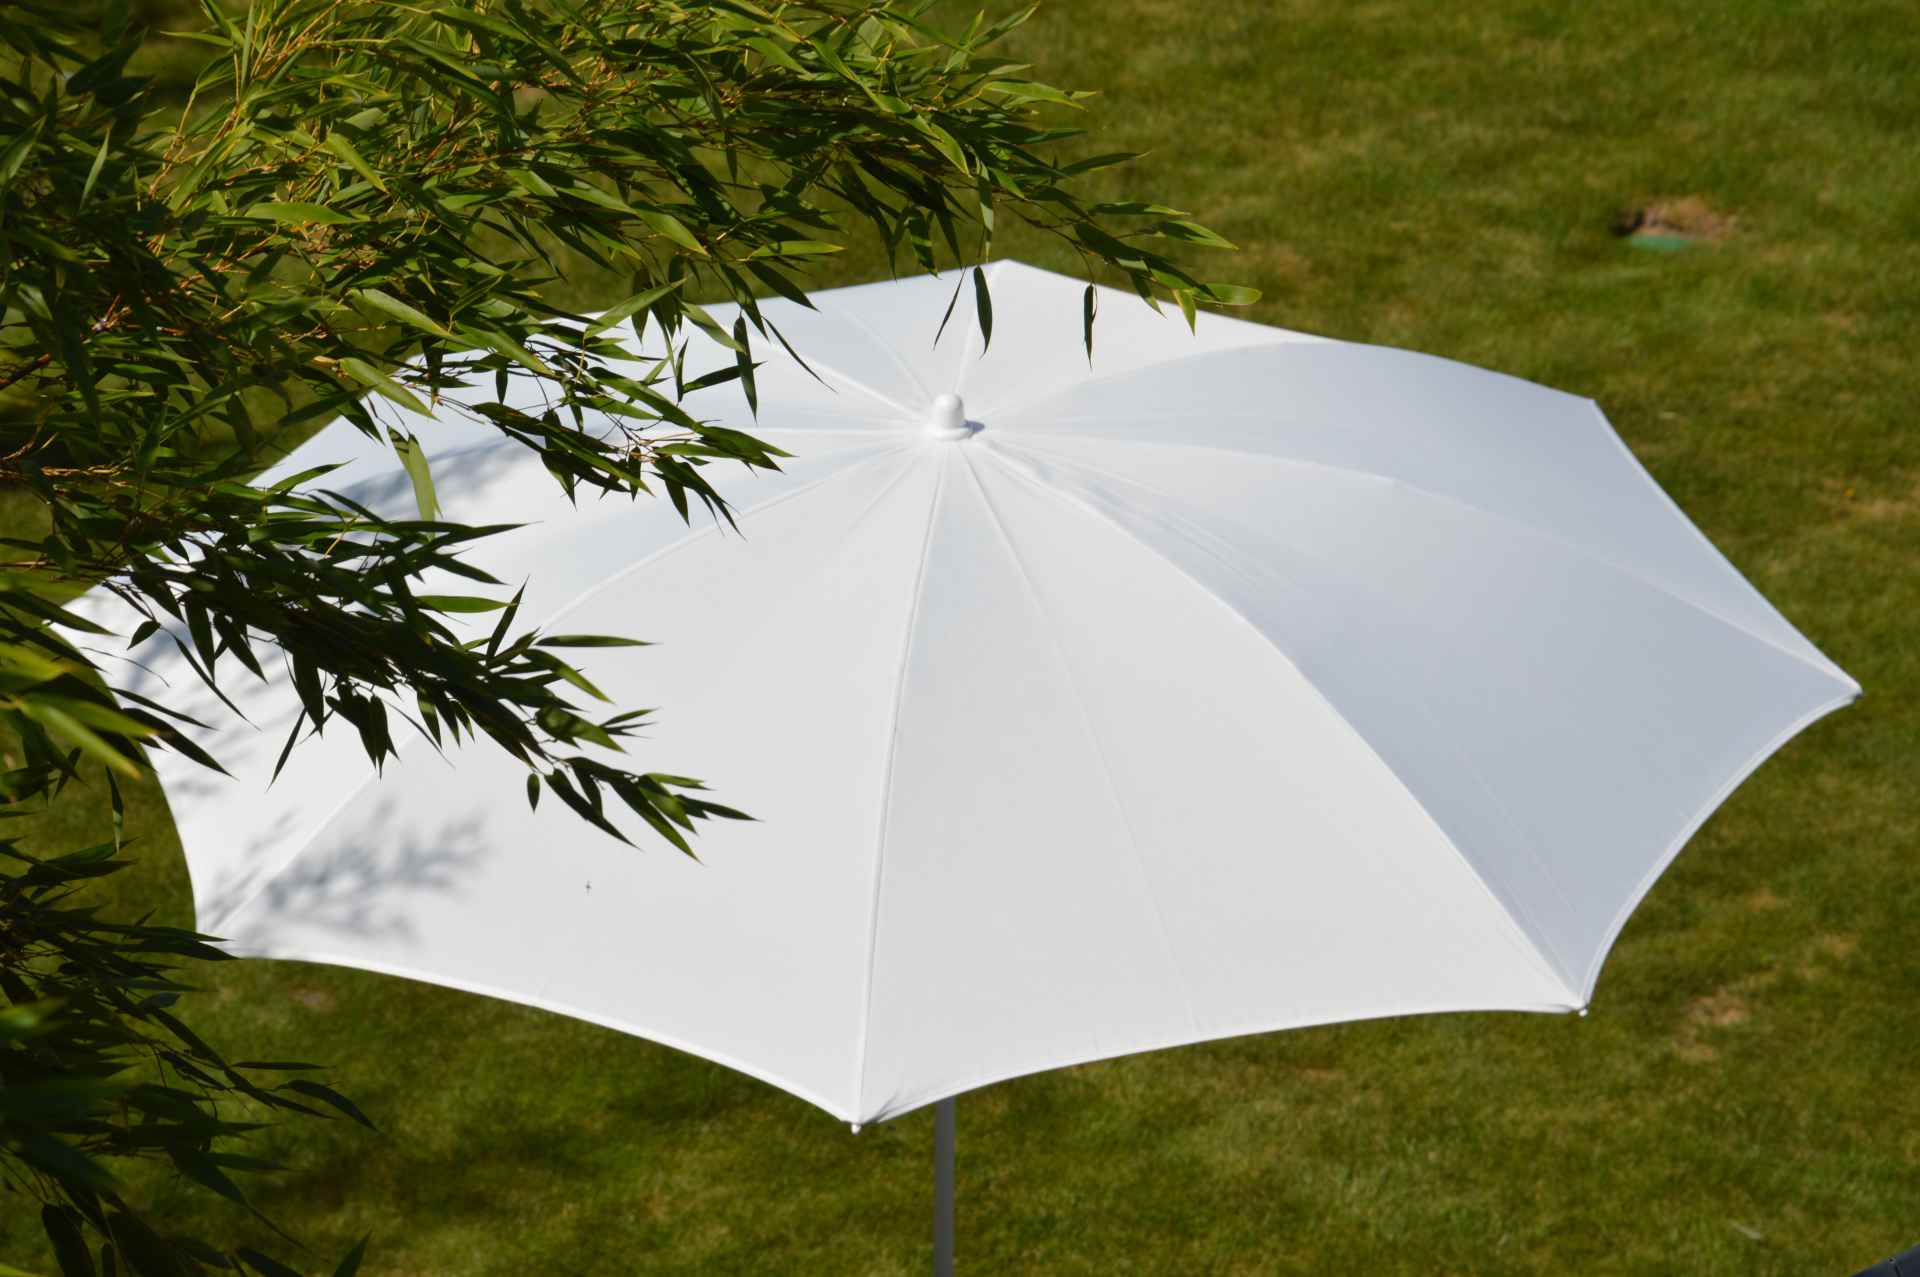 Der Sonnenschirm Revenna überzeugt mit seinem modernen Design. Die Form des Schirms ist Rund. Designet wurde er von der Marke Jan Kurtz und hat die Farbe Himmelblau.